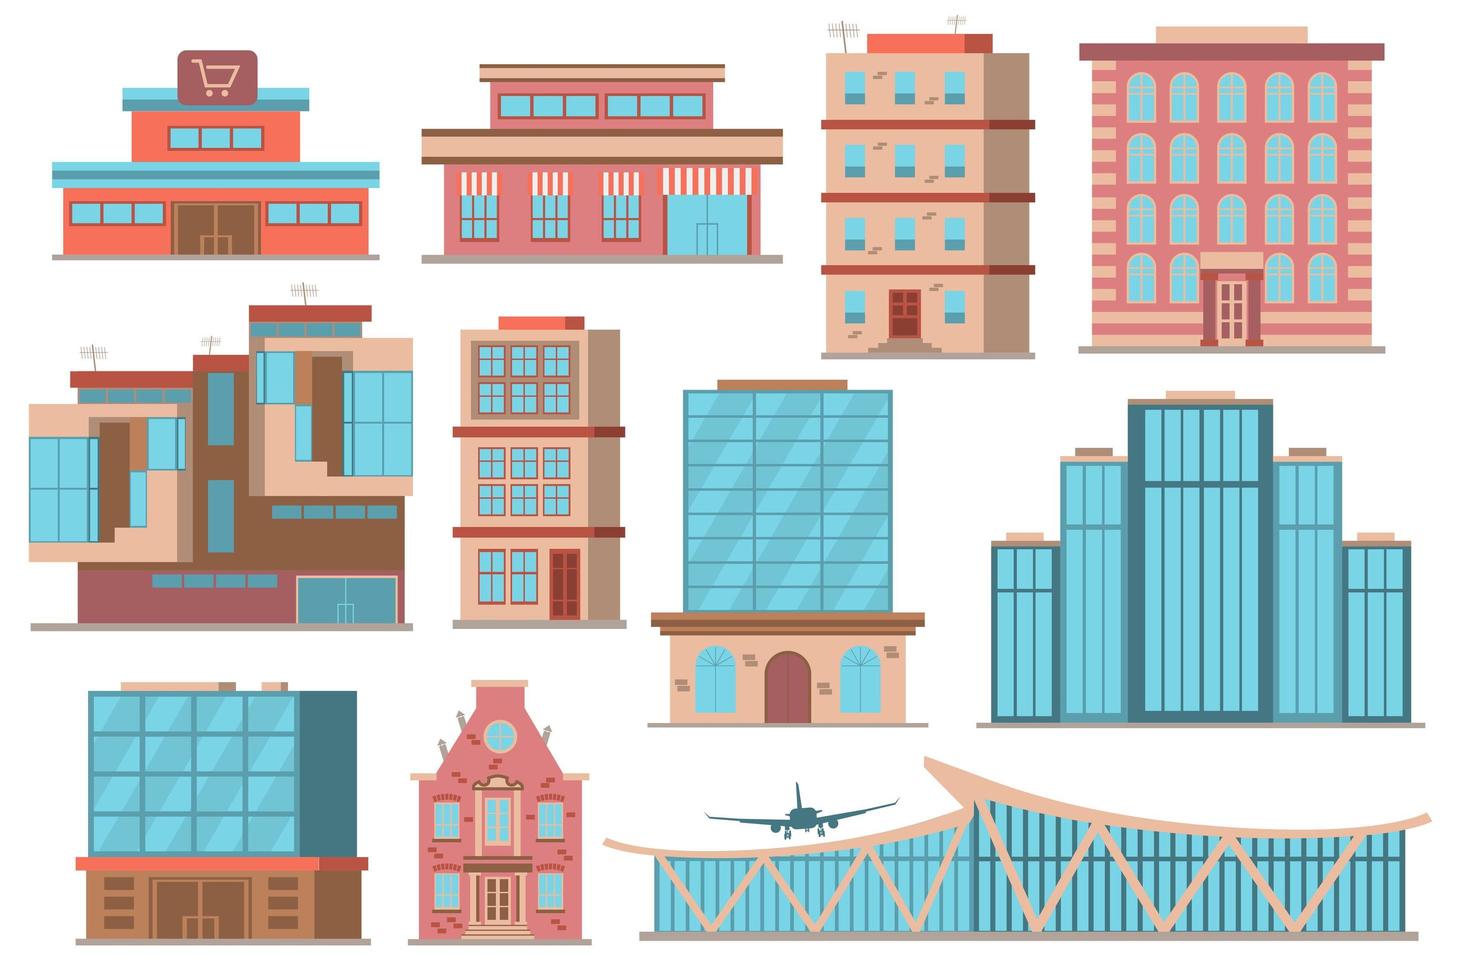 stadsbyggnader konceptsamling i platt tecknad design. olika typer av privata eller offentliga byggnader i modern arkitekturstil. fastigheter stadsbild som isolerade element. vektor illustration